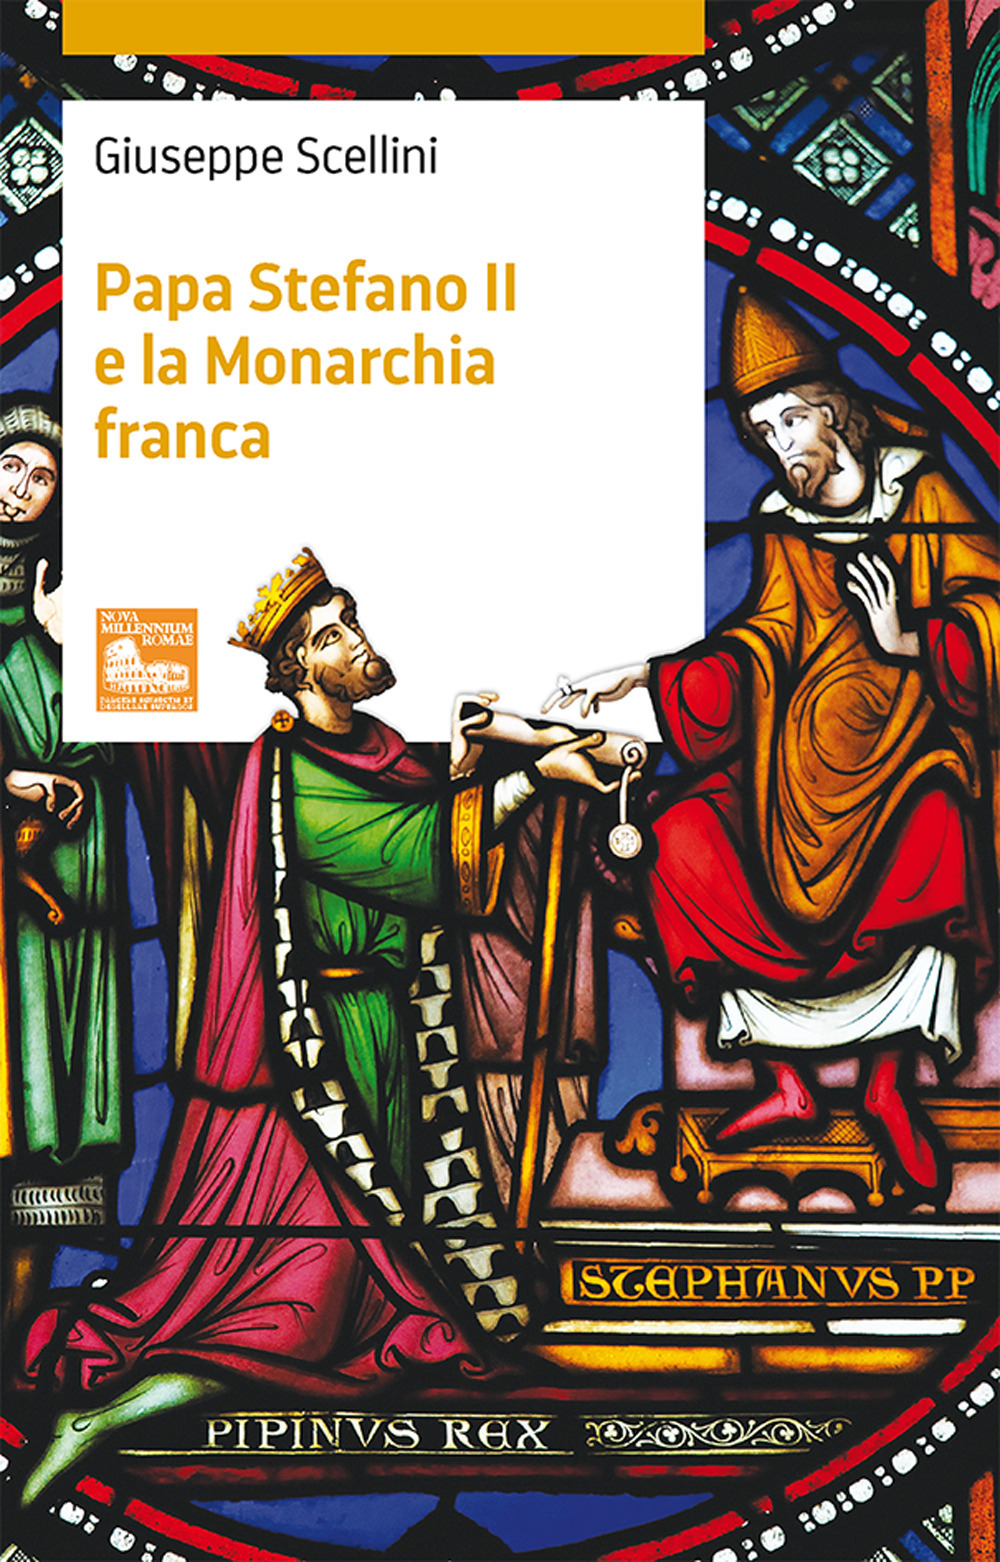 Papa Stefano II e la Monarchia franca